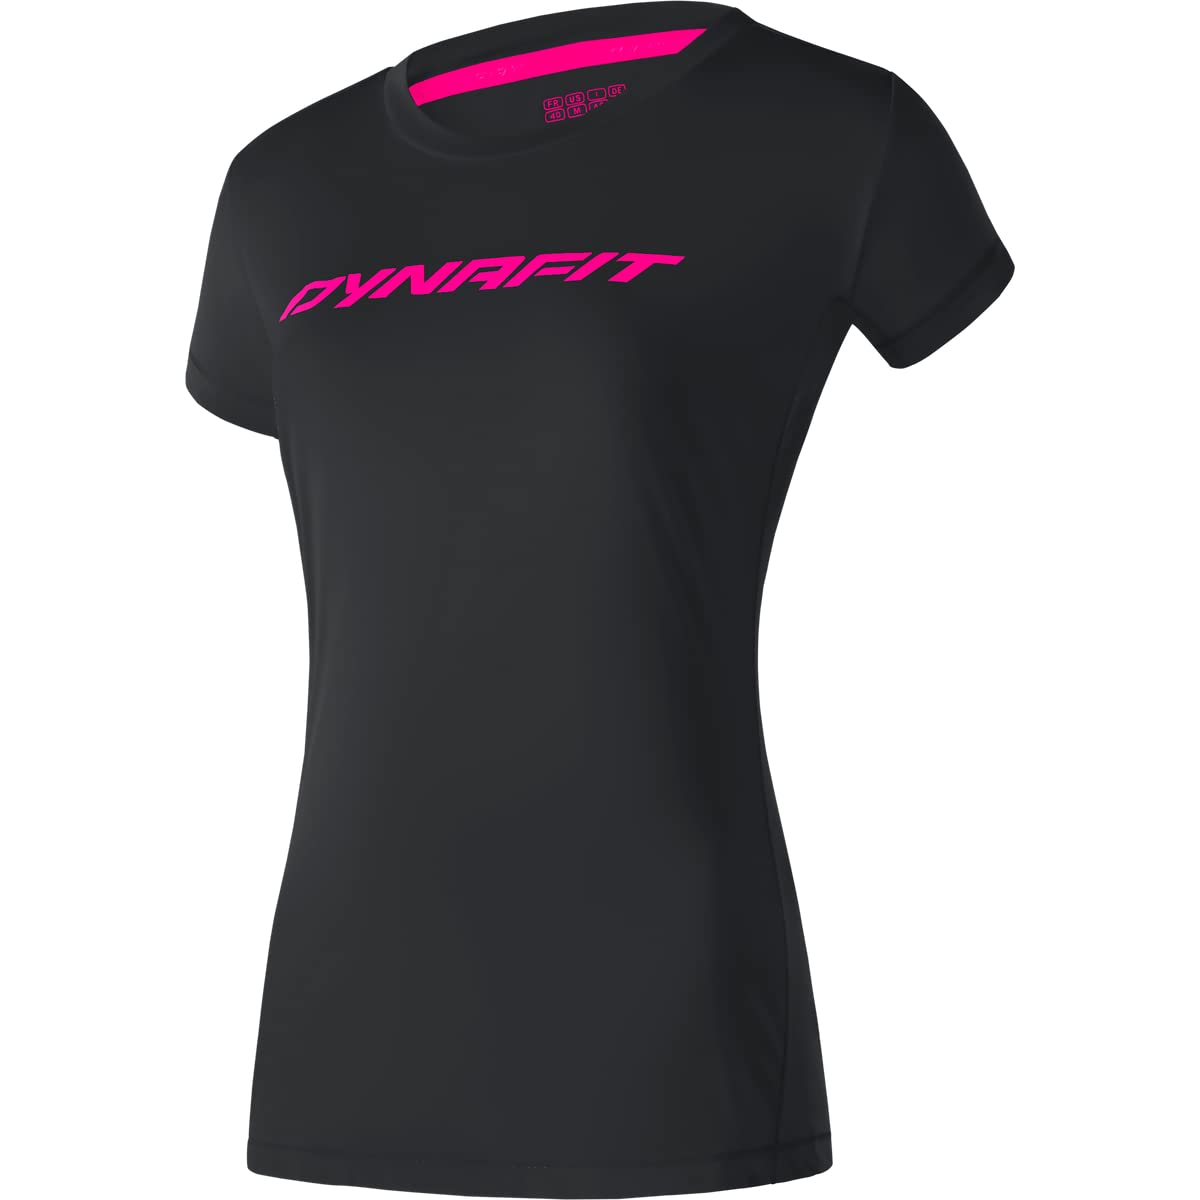 Dynafit Traverse 2 W S/S Tee T-Shirt, Komplett schwarz, 42